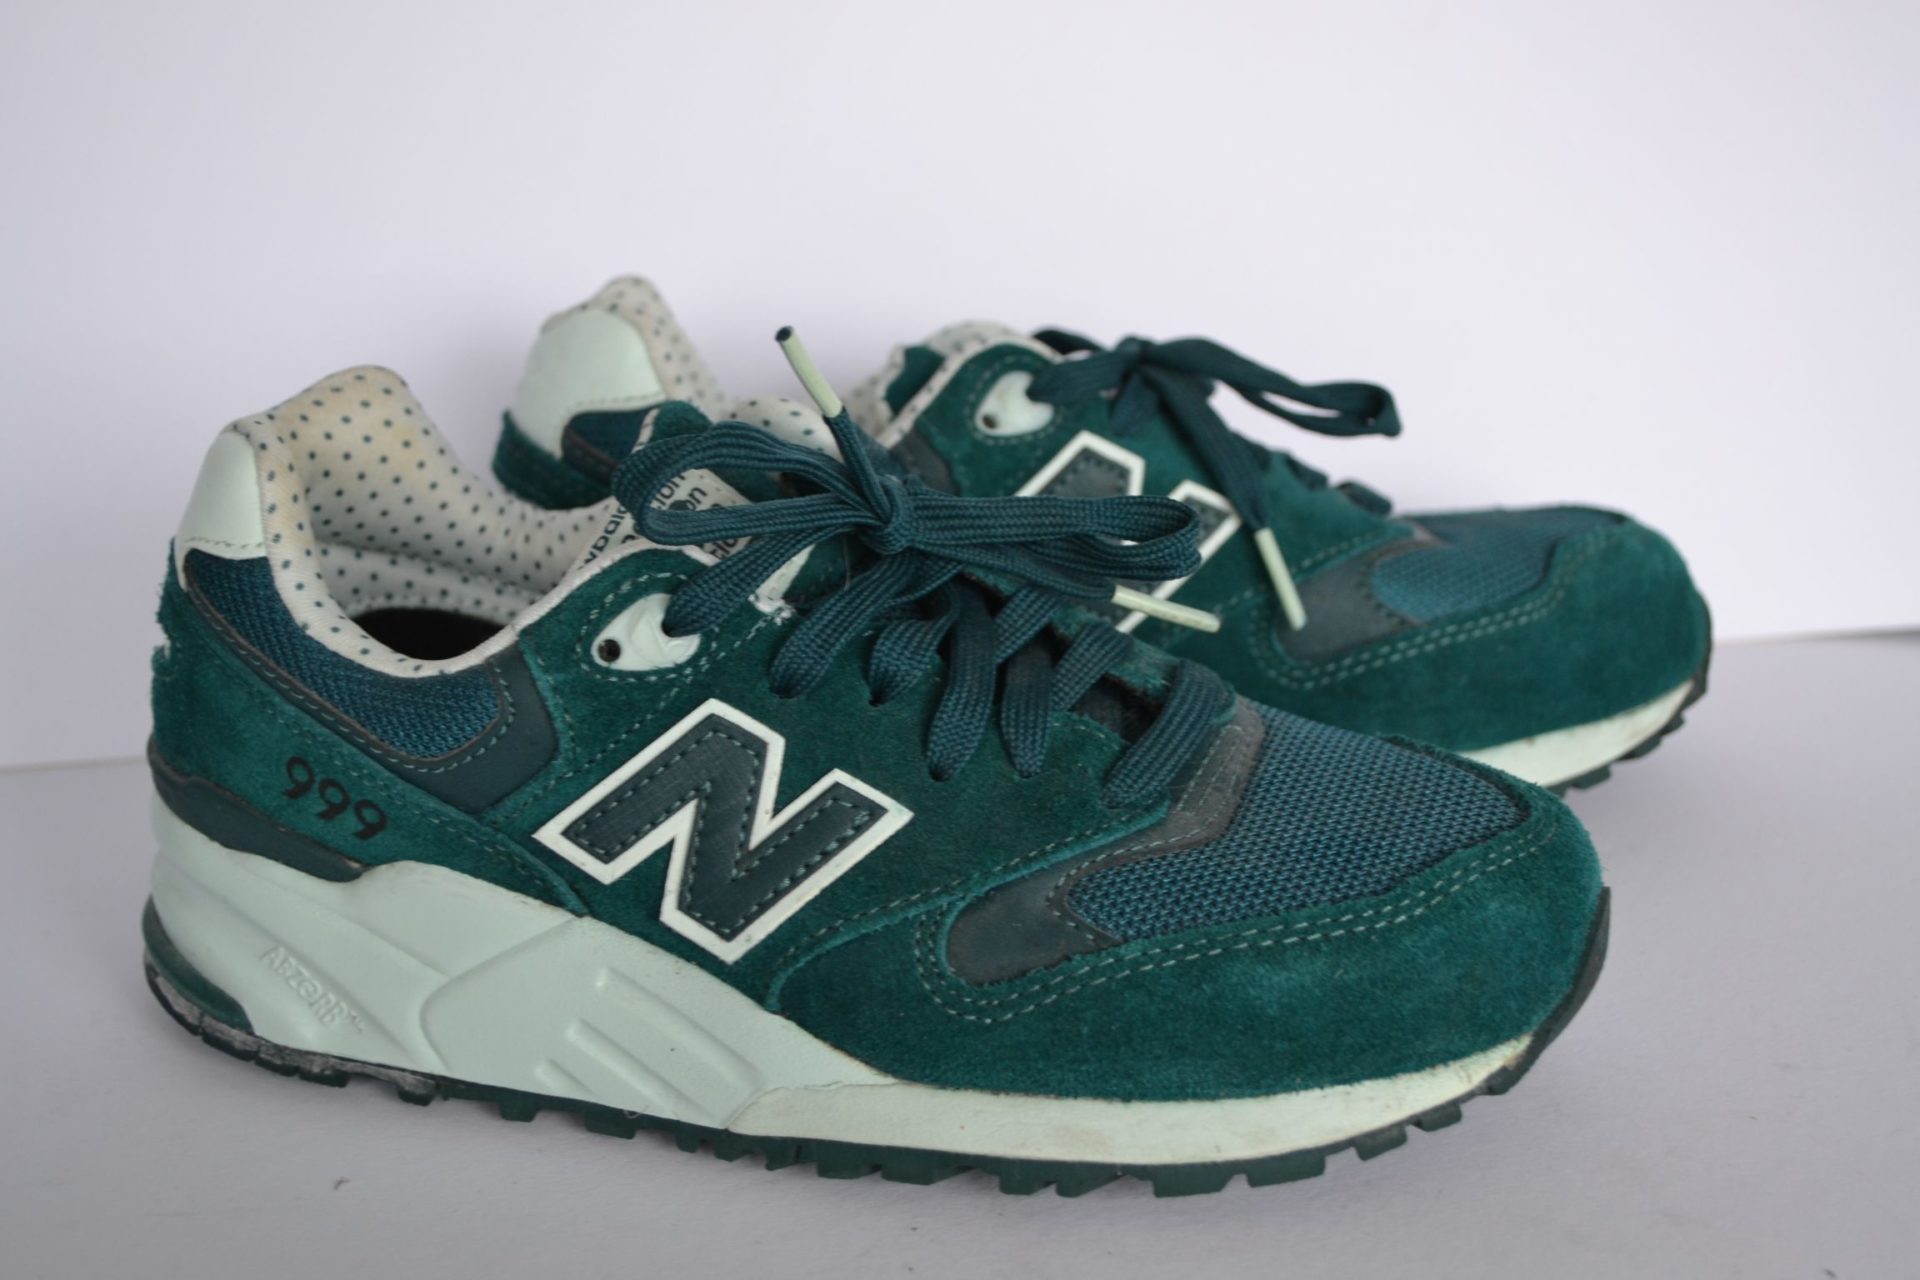 Reinig de vloer technisch Mooi New Balance sneakers groen - Meuq